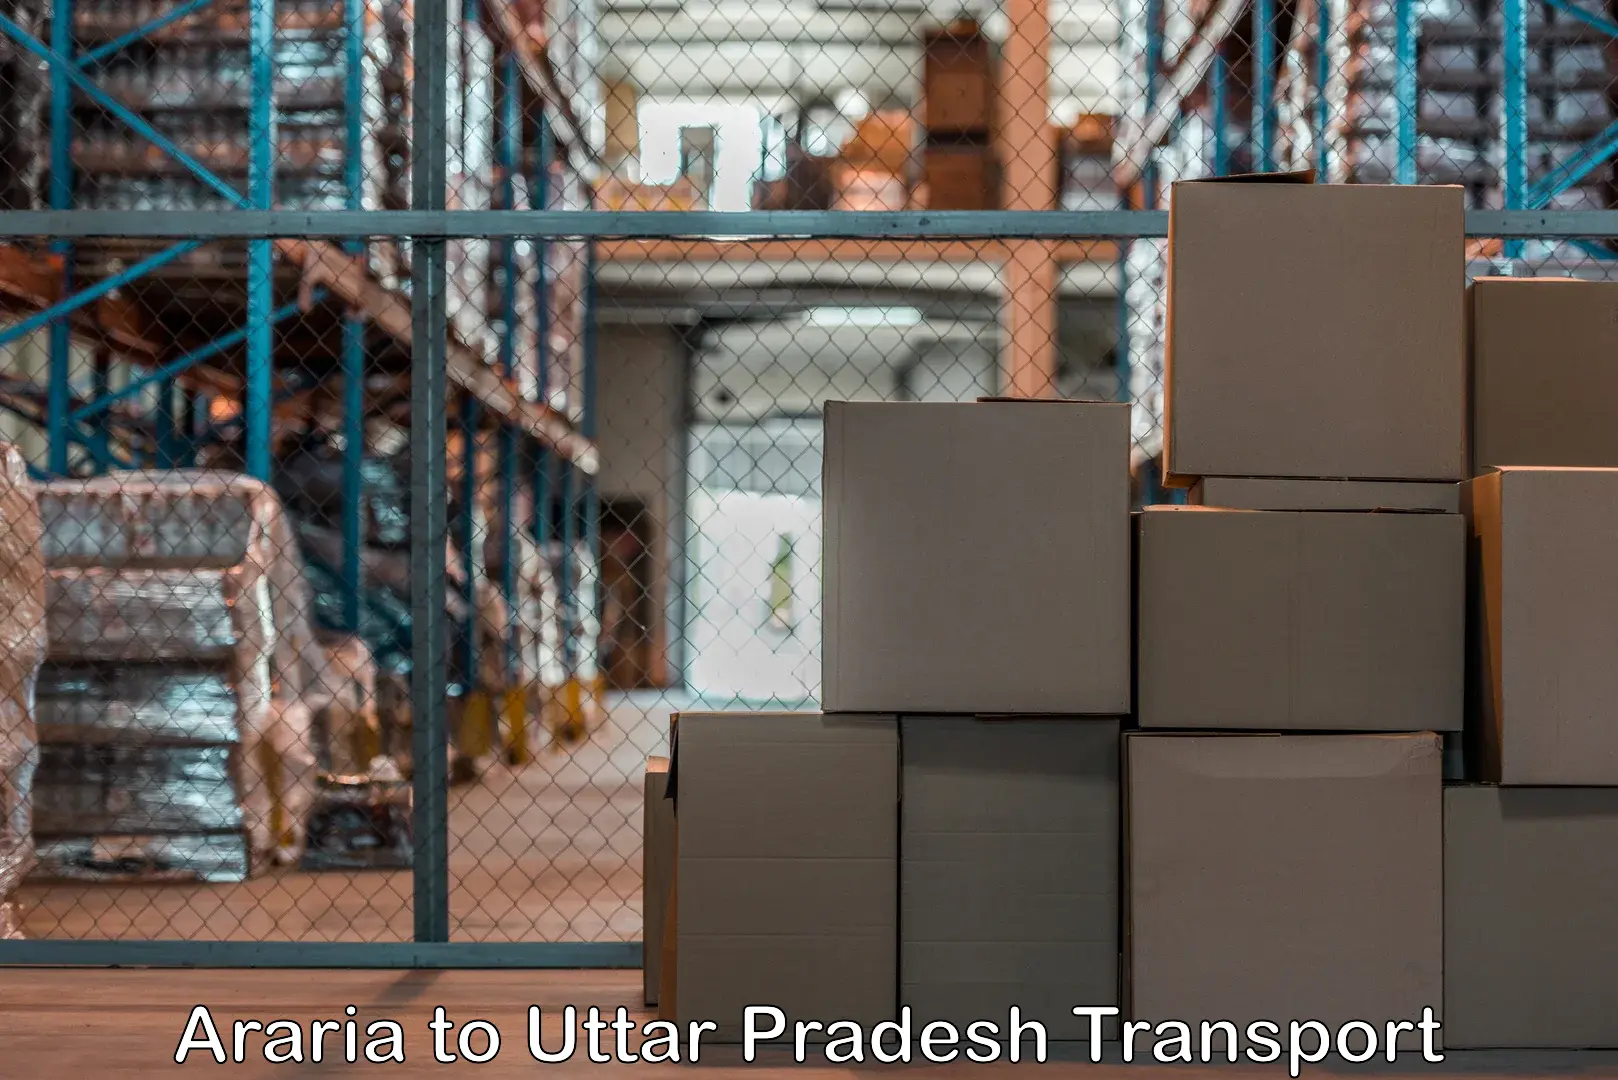 Cargo transportation services Araria to Mirzapur